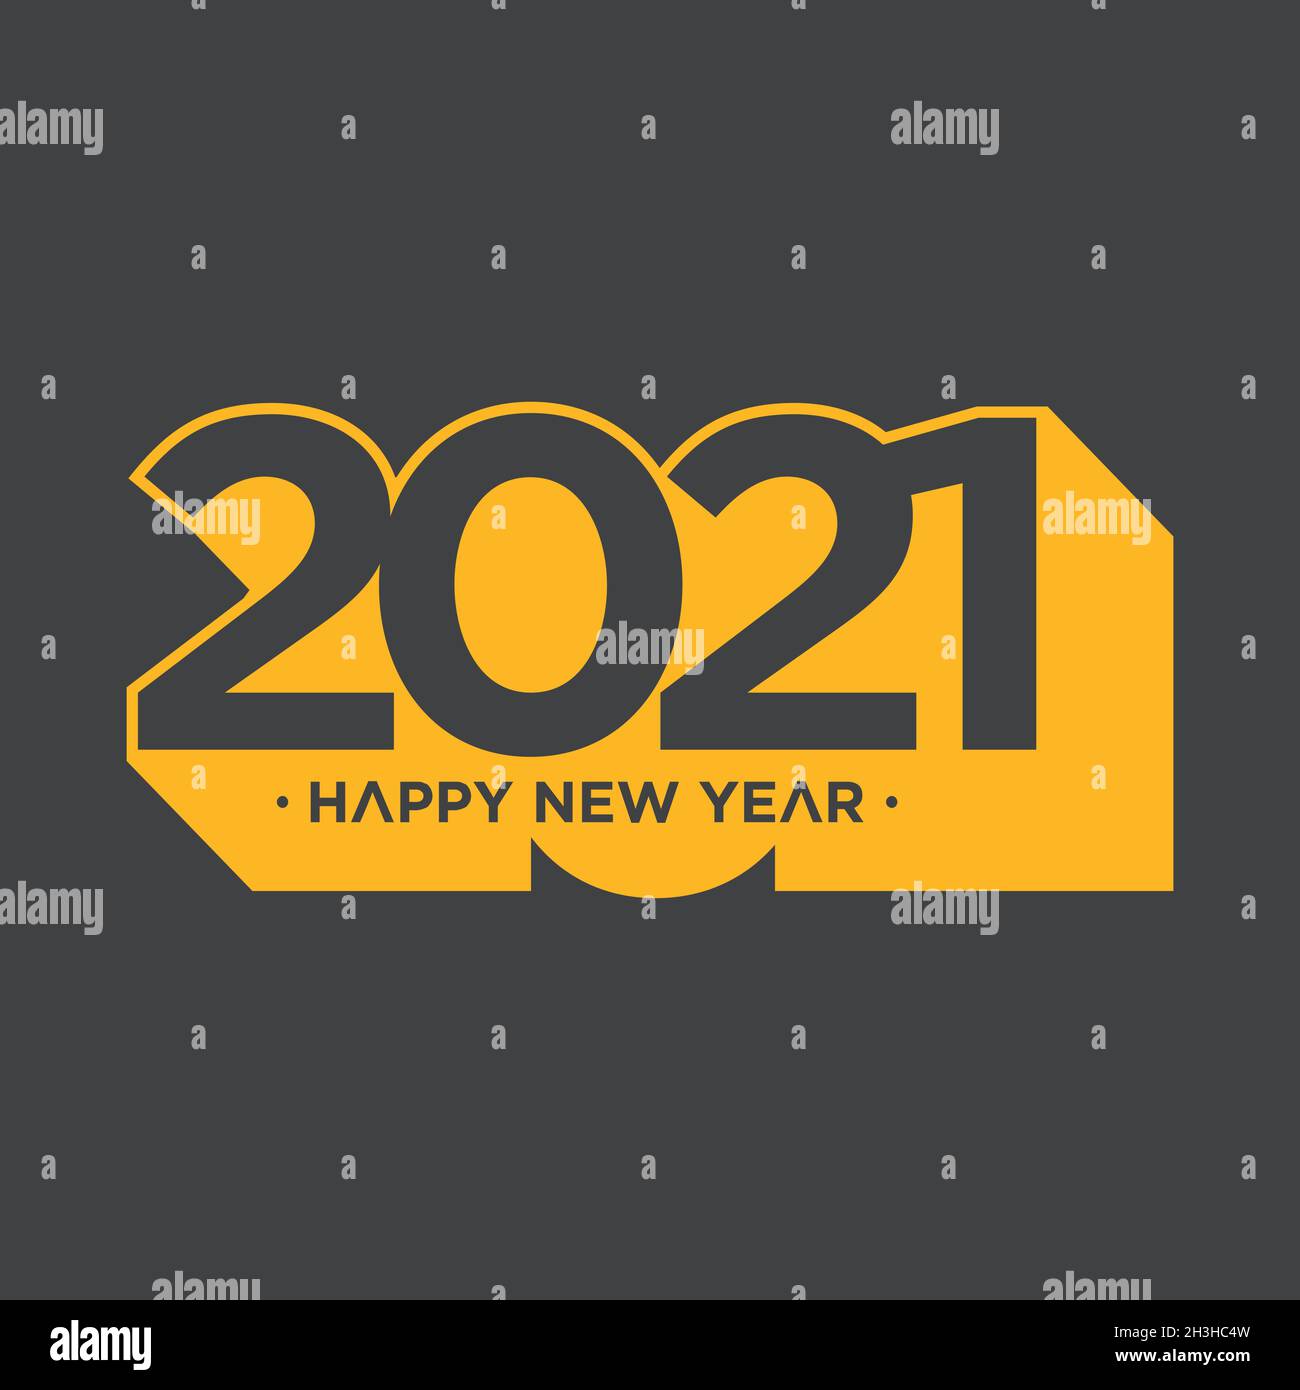 Bonne année 2021, style ombré sur fond gris. Modèle d'illustration d'arrière-plan vectoriel du nouvel an 2021. Illustration vectorielle EPS.8 EPS.10 Illustration de Vecteur